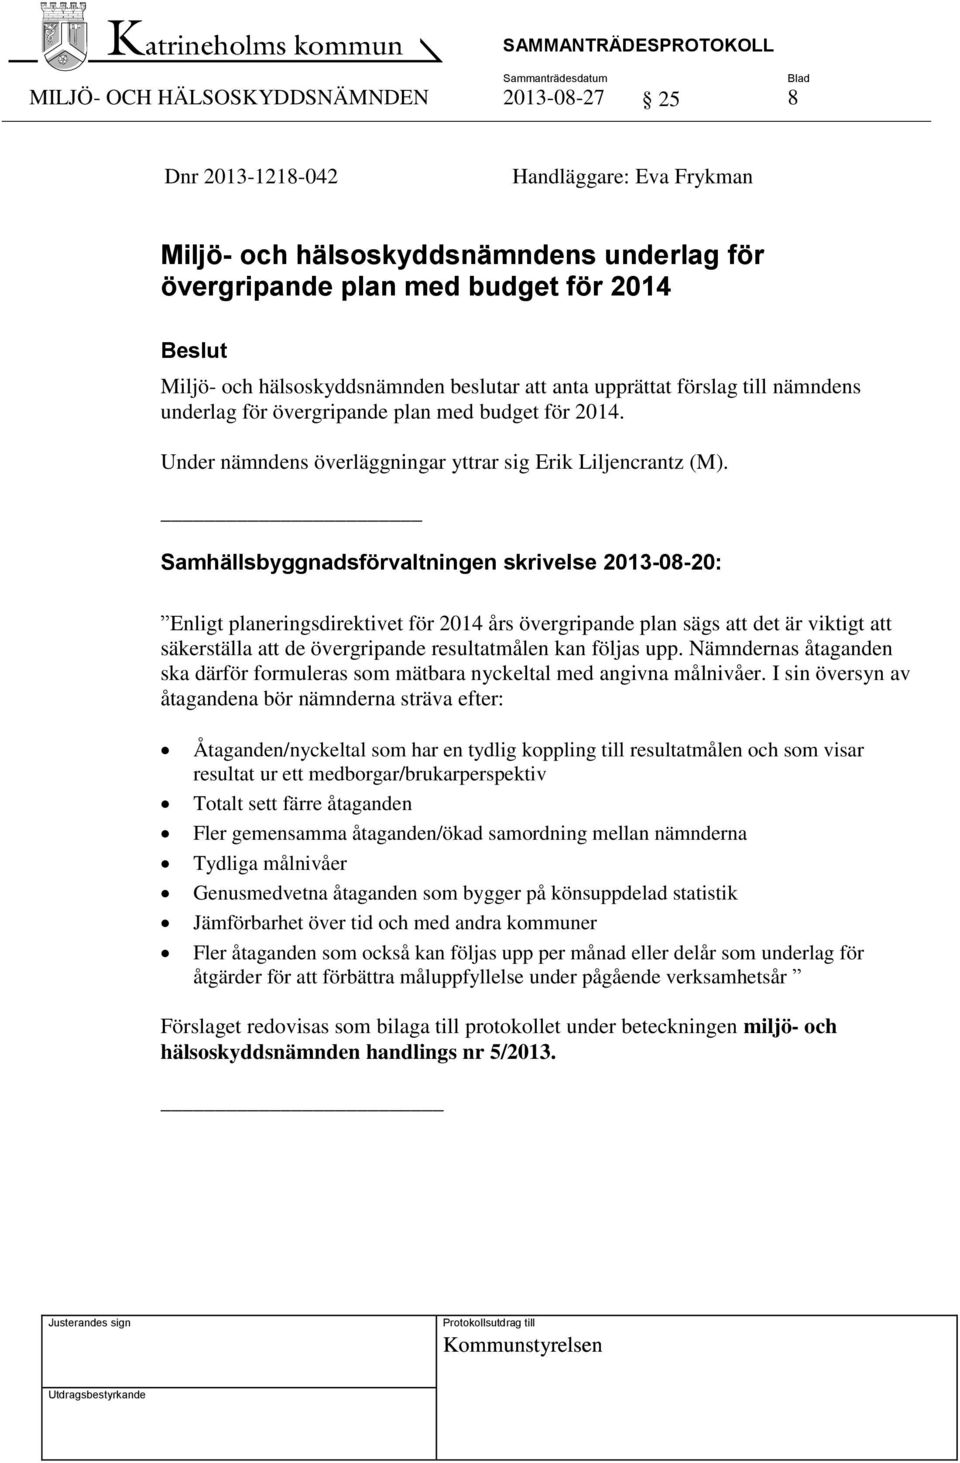 Samhällsbyggnadsförvaltningen skrivelse 2013-08-20: Enligt planeringsdirektivet för 2014 års övergripande plan sägs att det är viktigt att säkerställa att de övergripande resultatmålen kan följas upp.